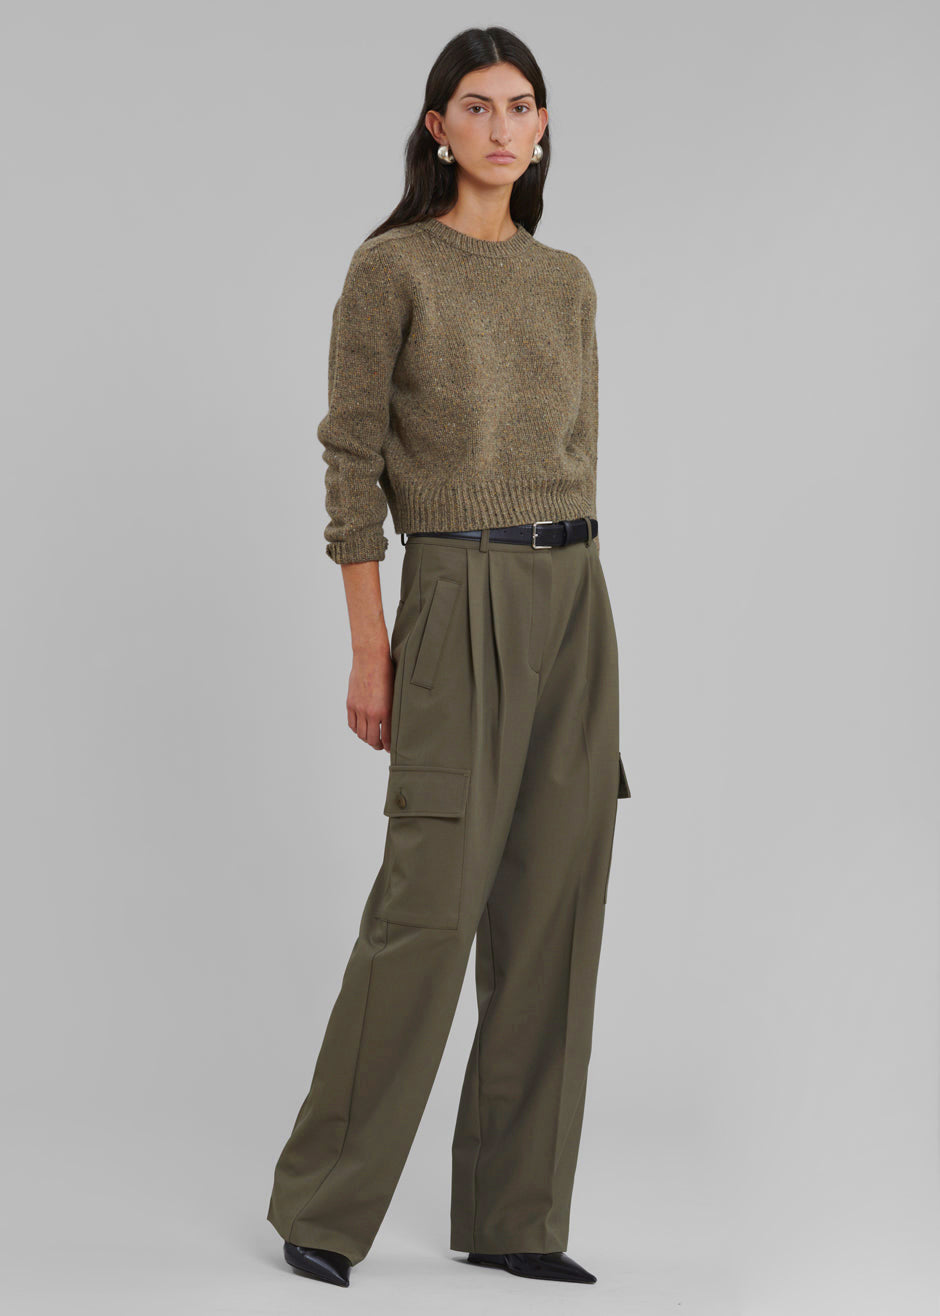 WOMEN FASHION Trousers Wide-leg Beige 38                  EU discount 77% Zara Cargo trousers 